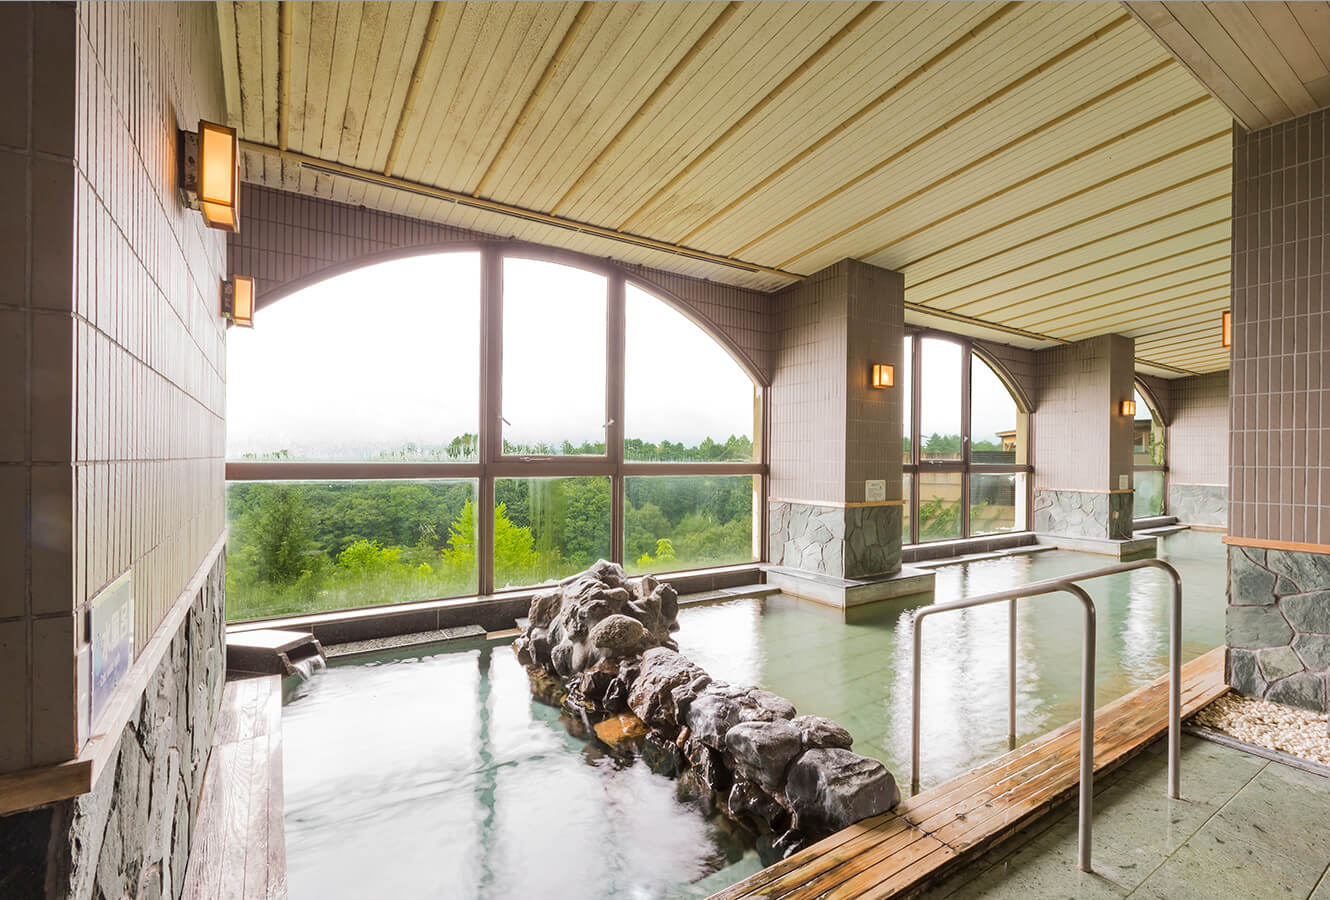 鷲宿温泉 開湯450年の歴史を誇る自然豊かな温泉地